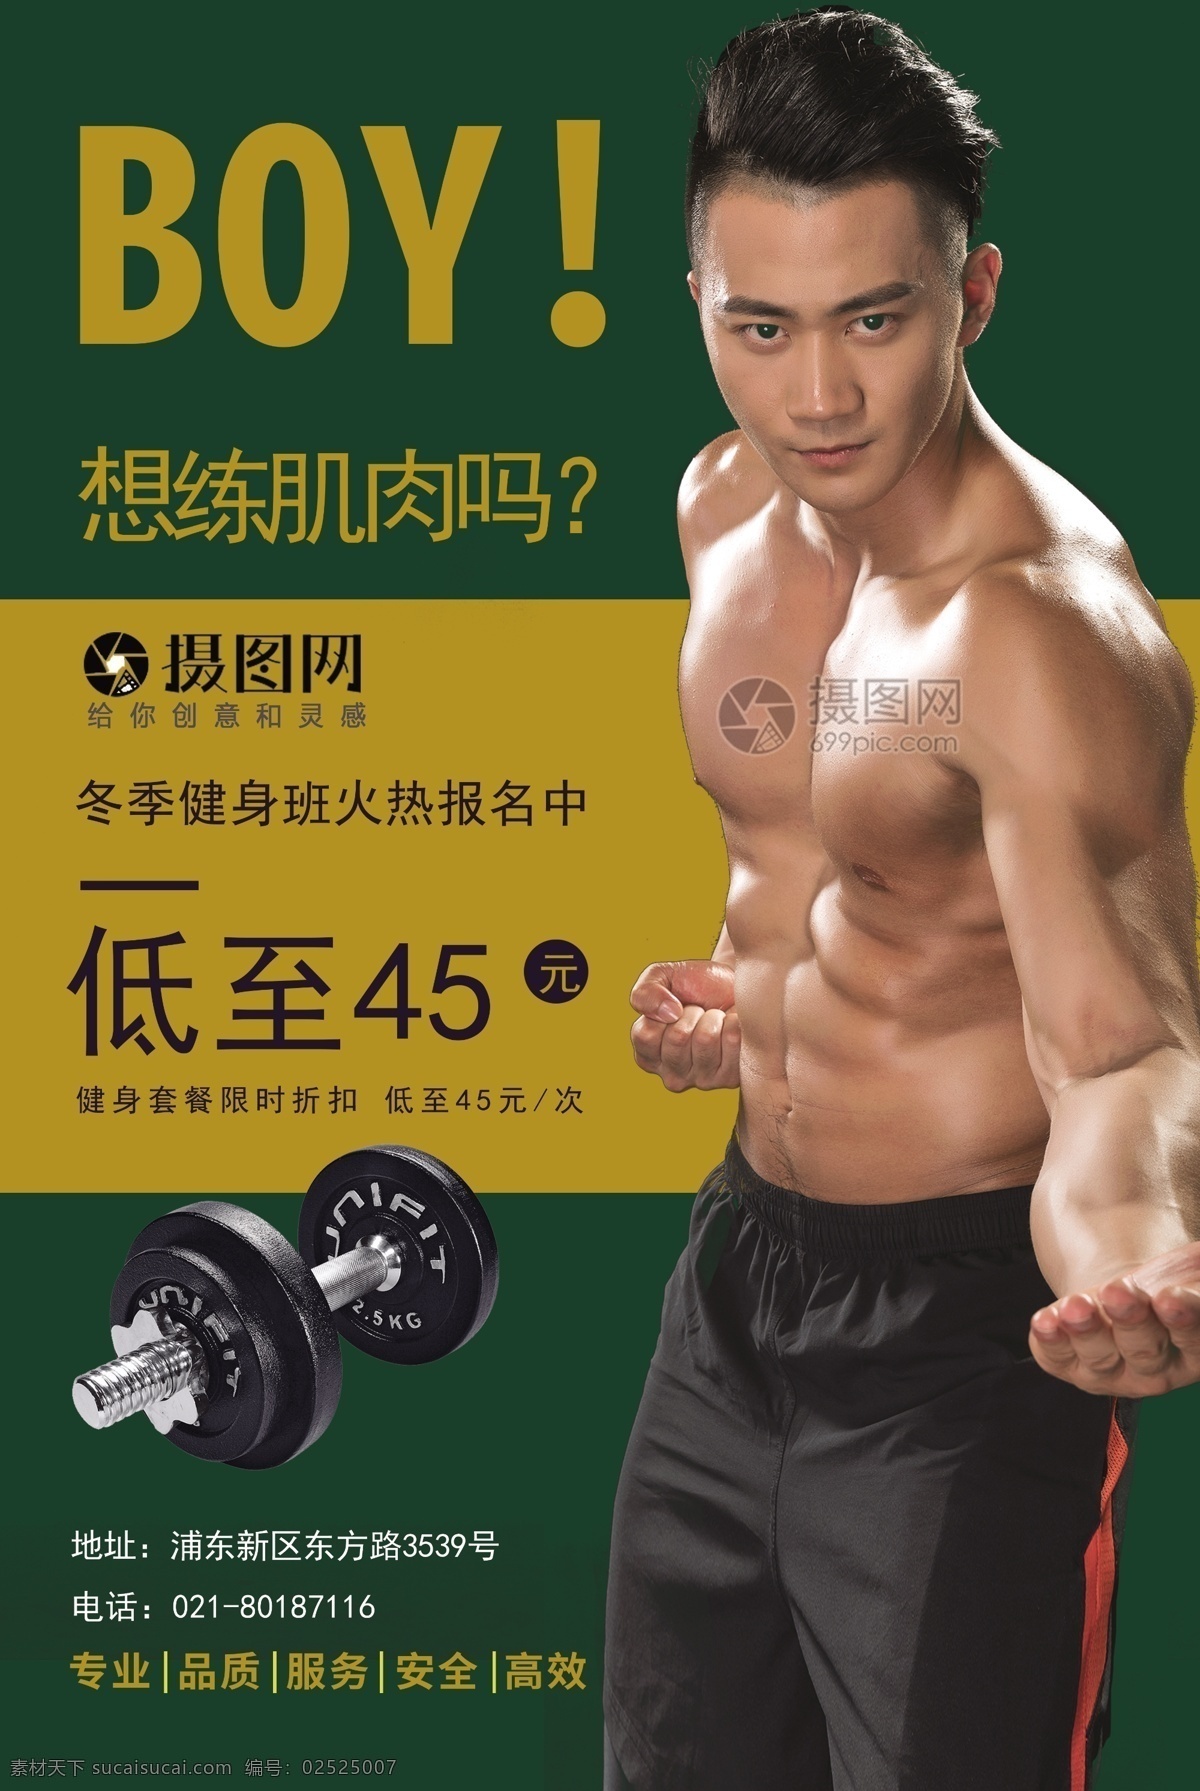 冬季 健身 运动 海报 深绿色 黄色 肖像权 男人 抠人像 哑铃 健身运动海报